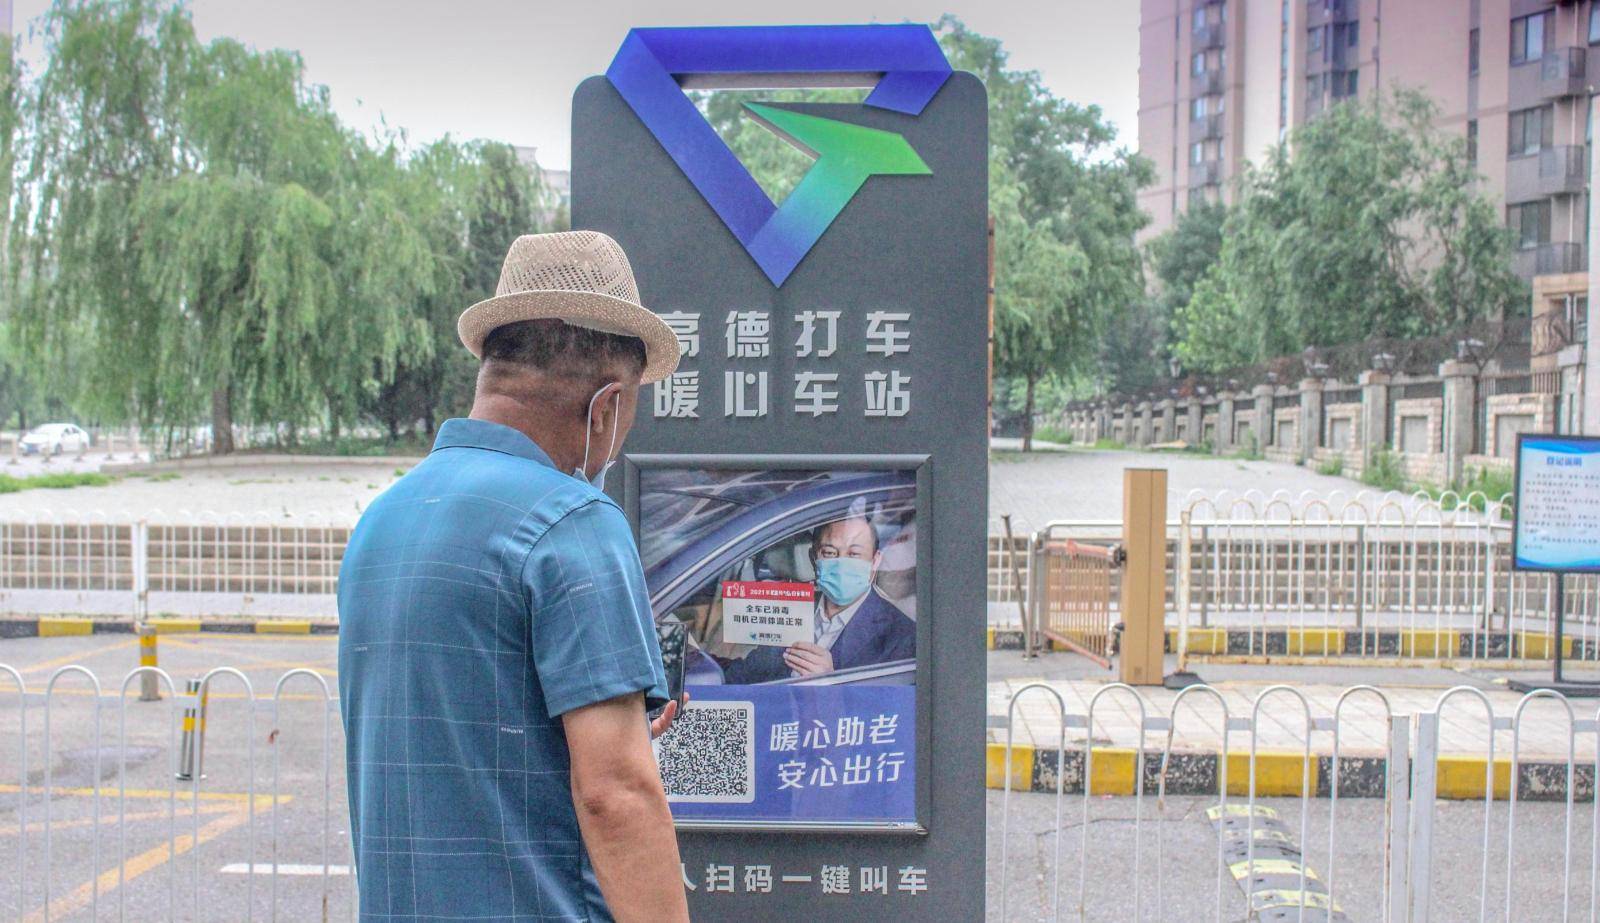 试点|上海“为老服务一键通”接入高德打车 帮助老年人一键叫车出行